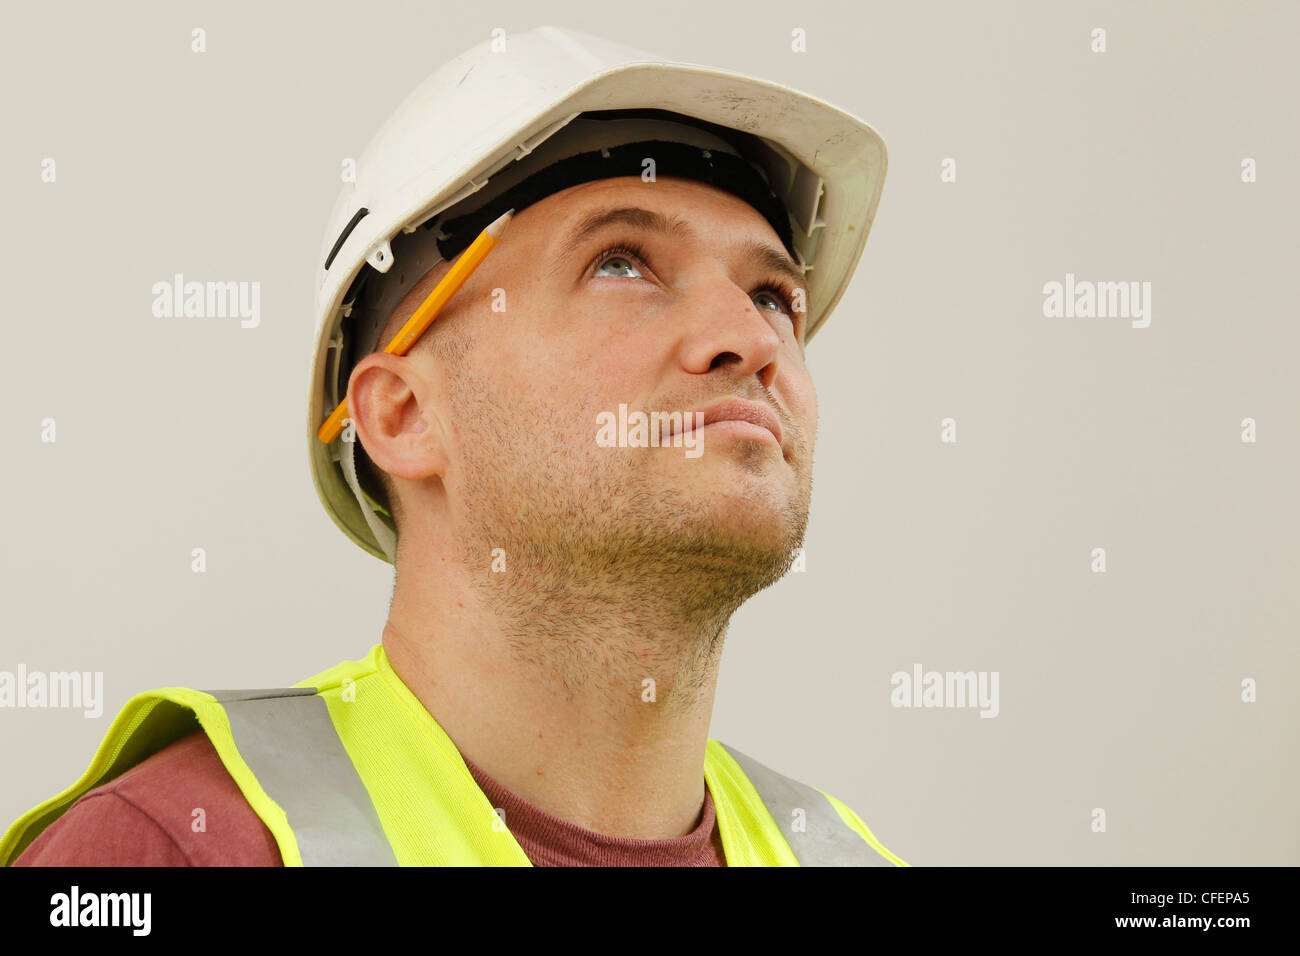 Modell stellte einen Arbeiter tragen Schutzhelm, hi-Vis-Jacke und Bleistift hinter dem Ohr Stockfoto